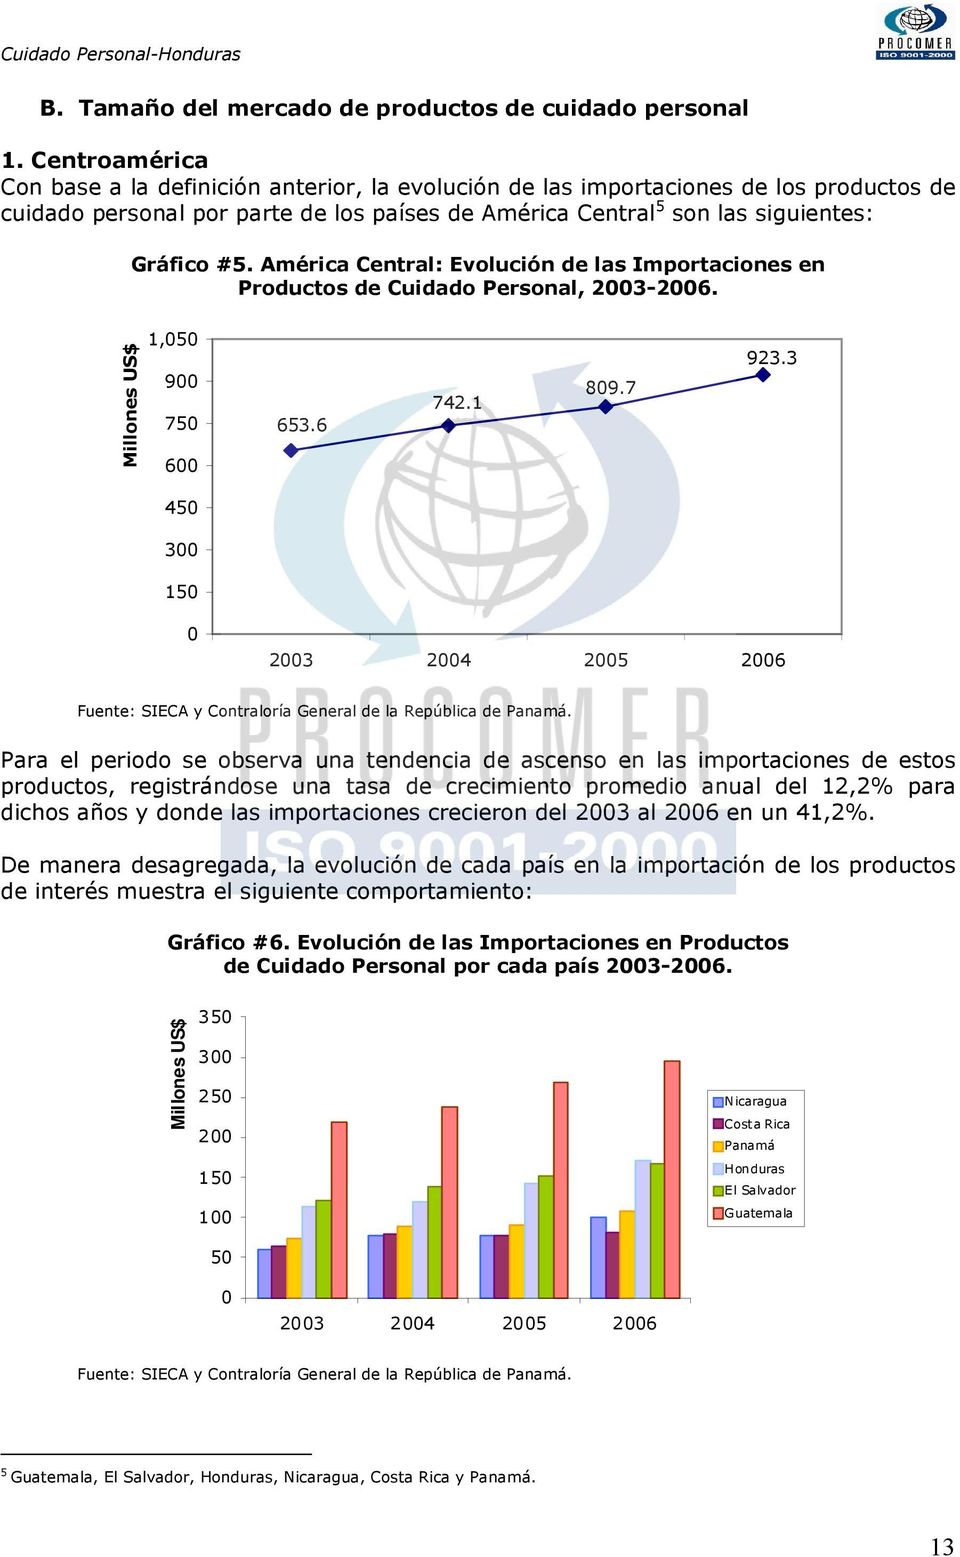 América Central: Evolución de las Importaciones en Productos de Cuidado Personal, 2003-2006. Millones US$ 1,050 900 750 600 653.6 742.1 809.7 923.